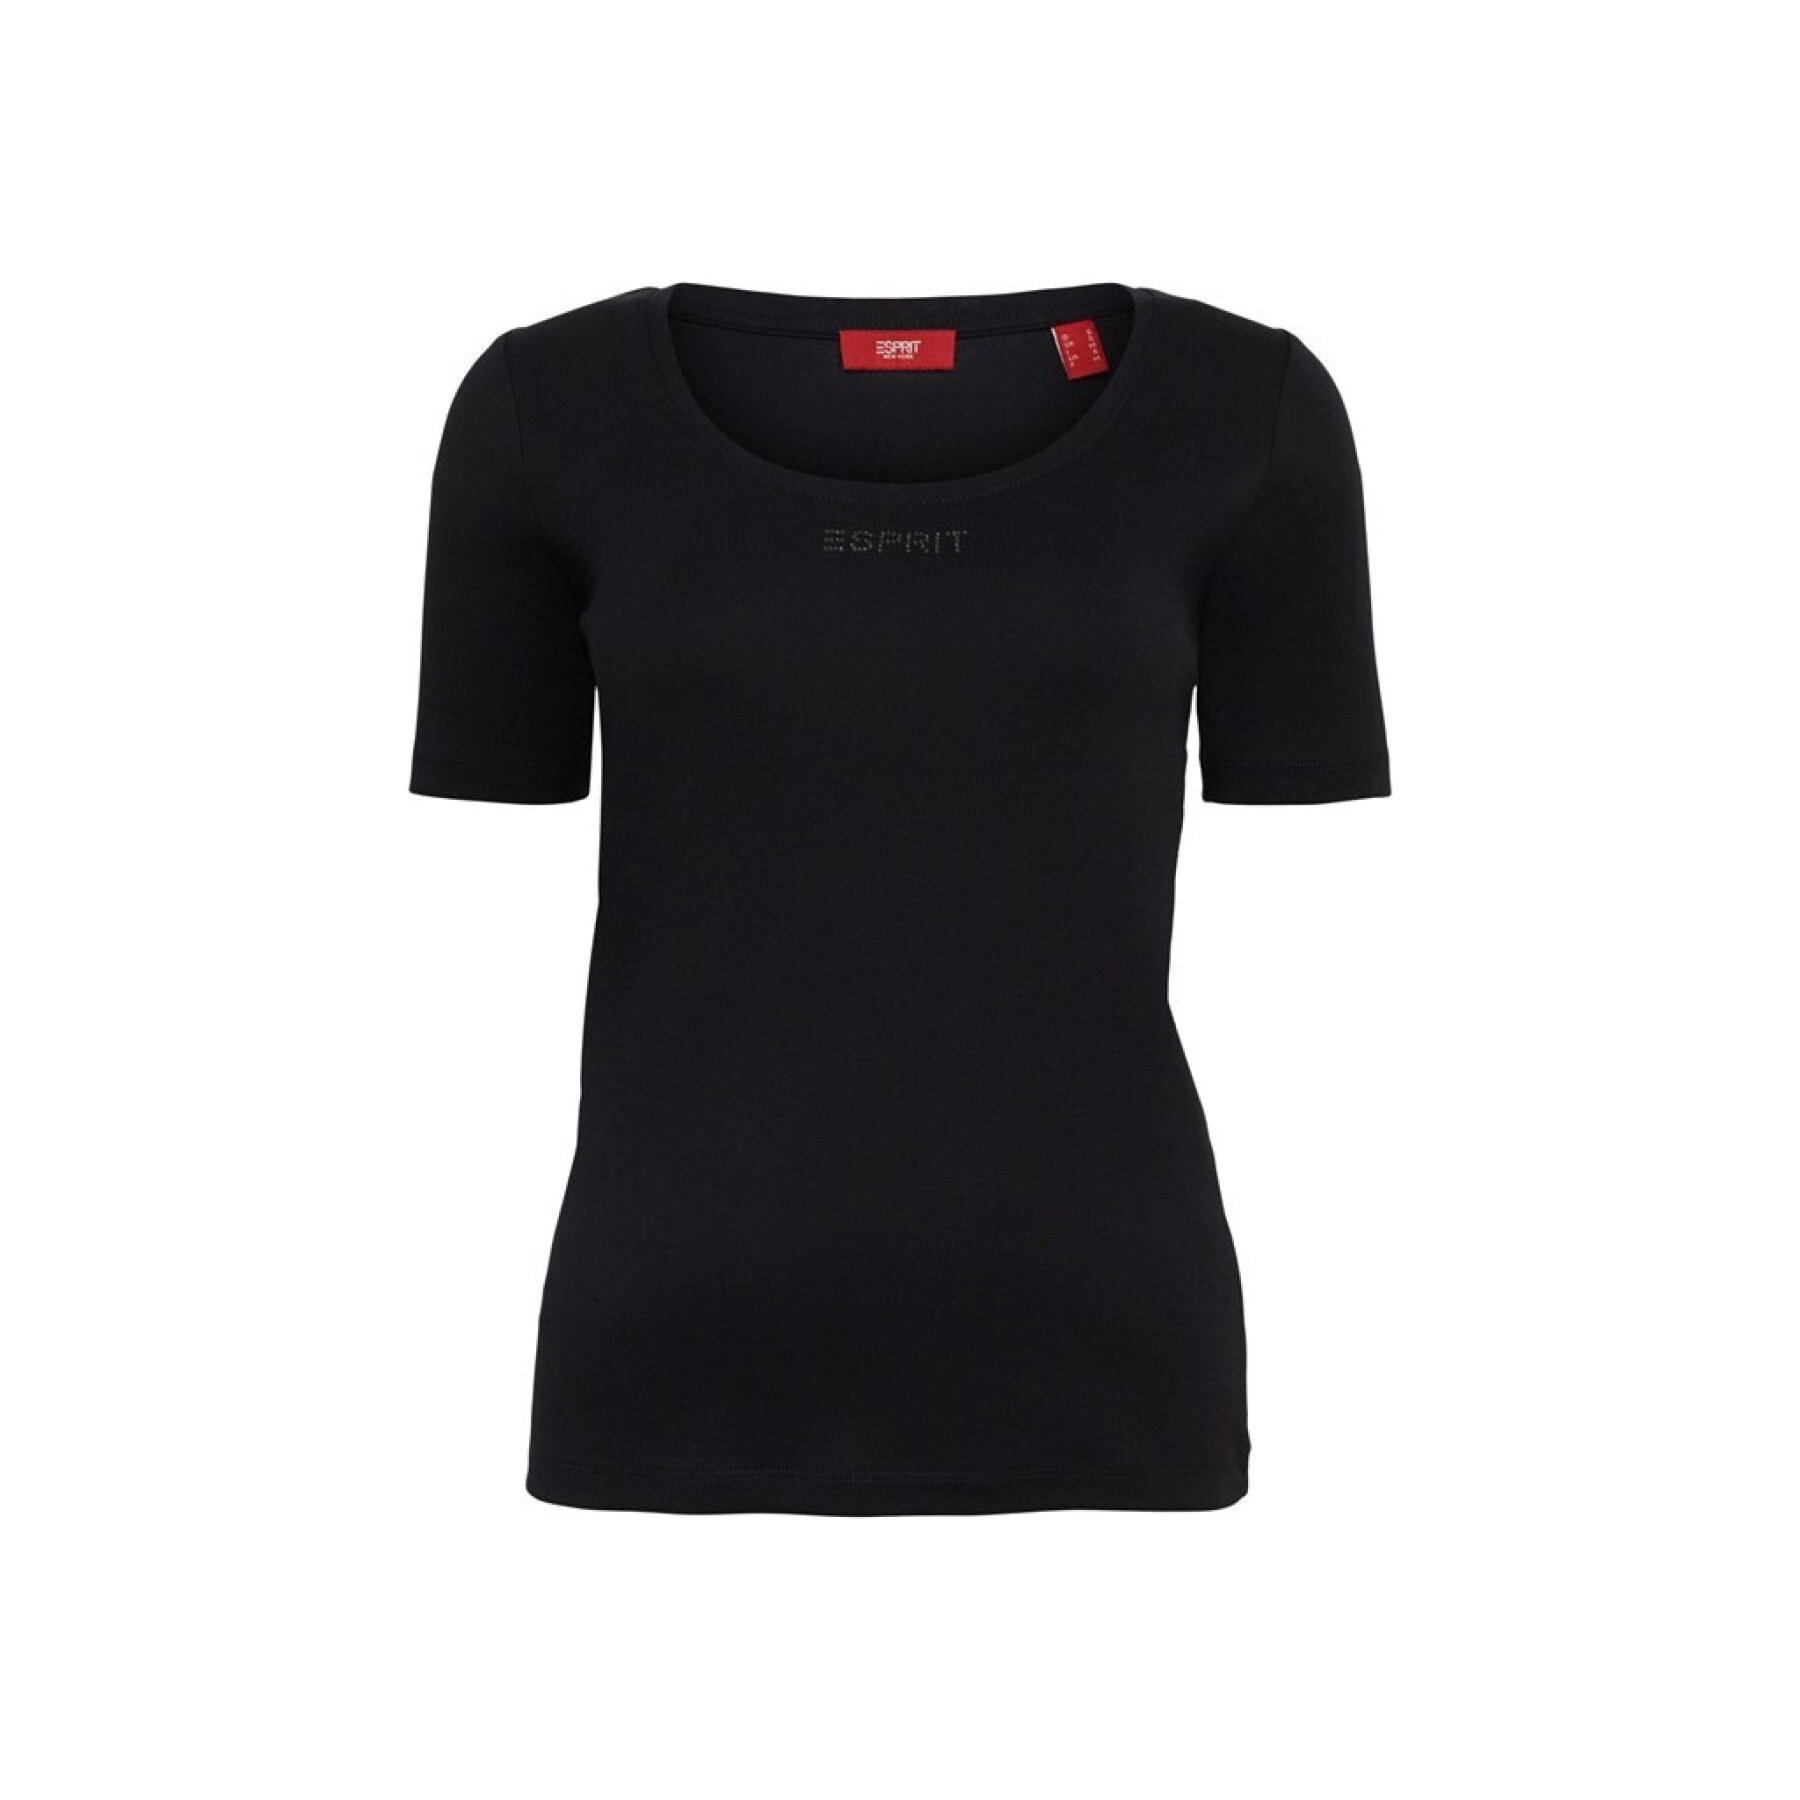 & Women T-shirt T-shirts Tank Clothing - Esprit Tops - Women\'s -